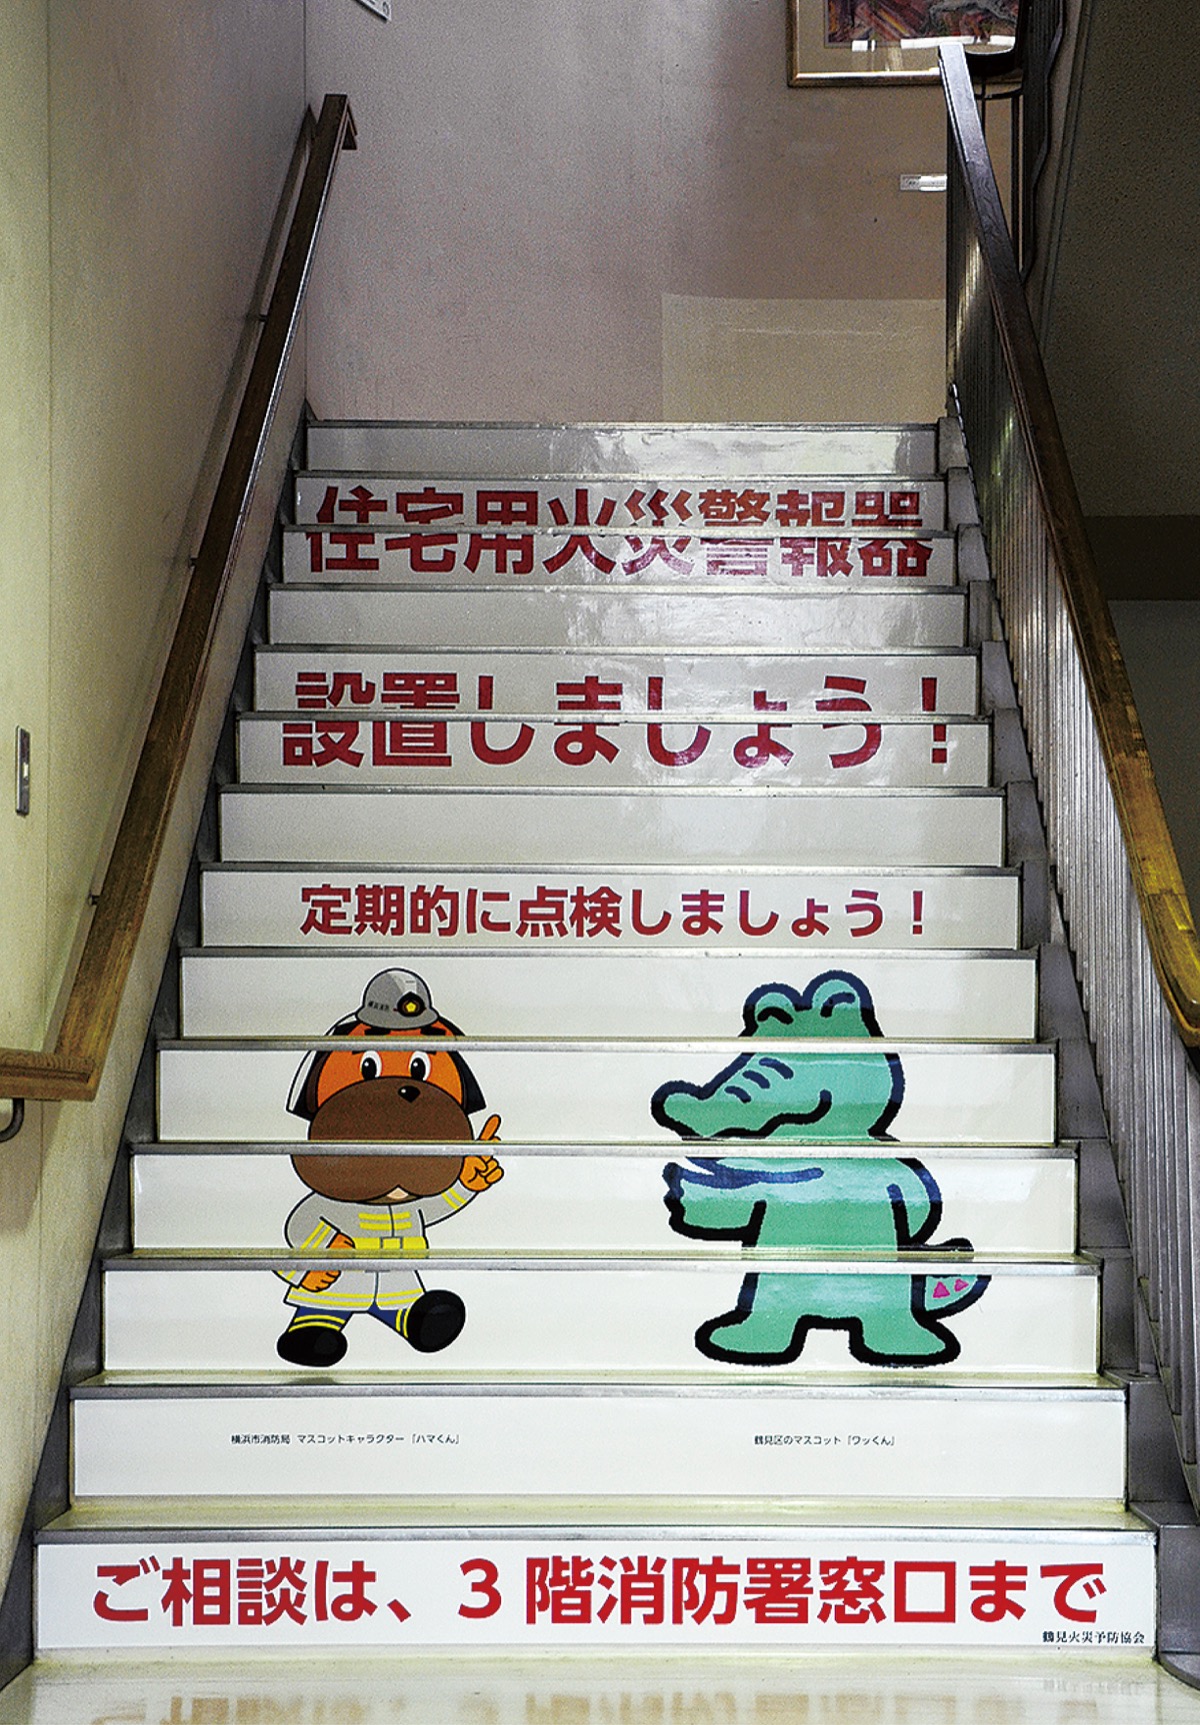 火災予防に階段活用 鶴見区 タウンニュース